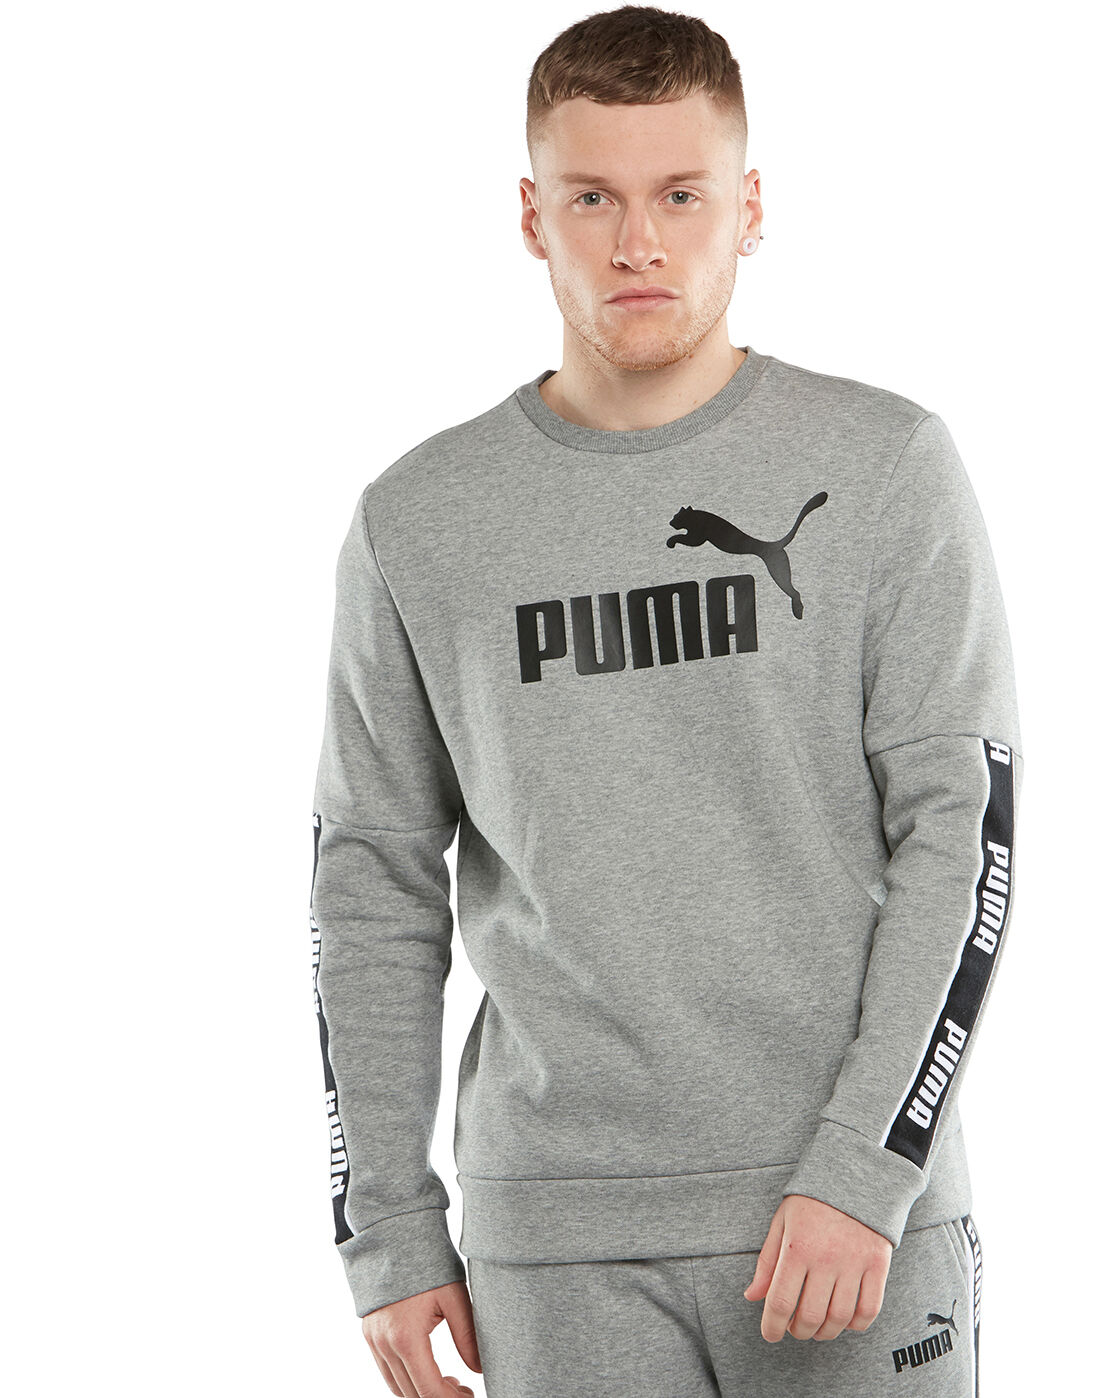 puma men's crew neck sweatshirt